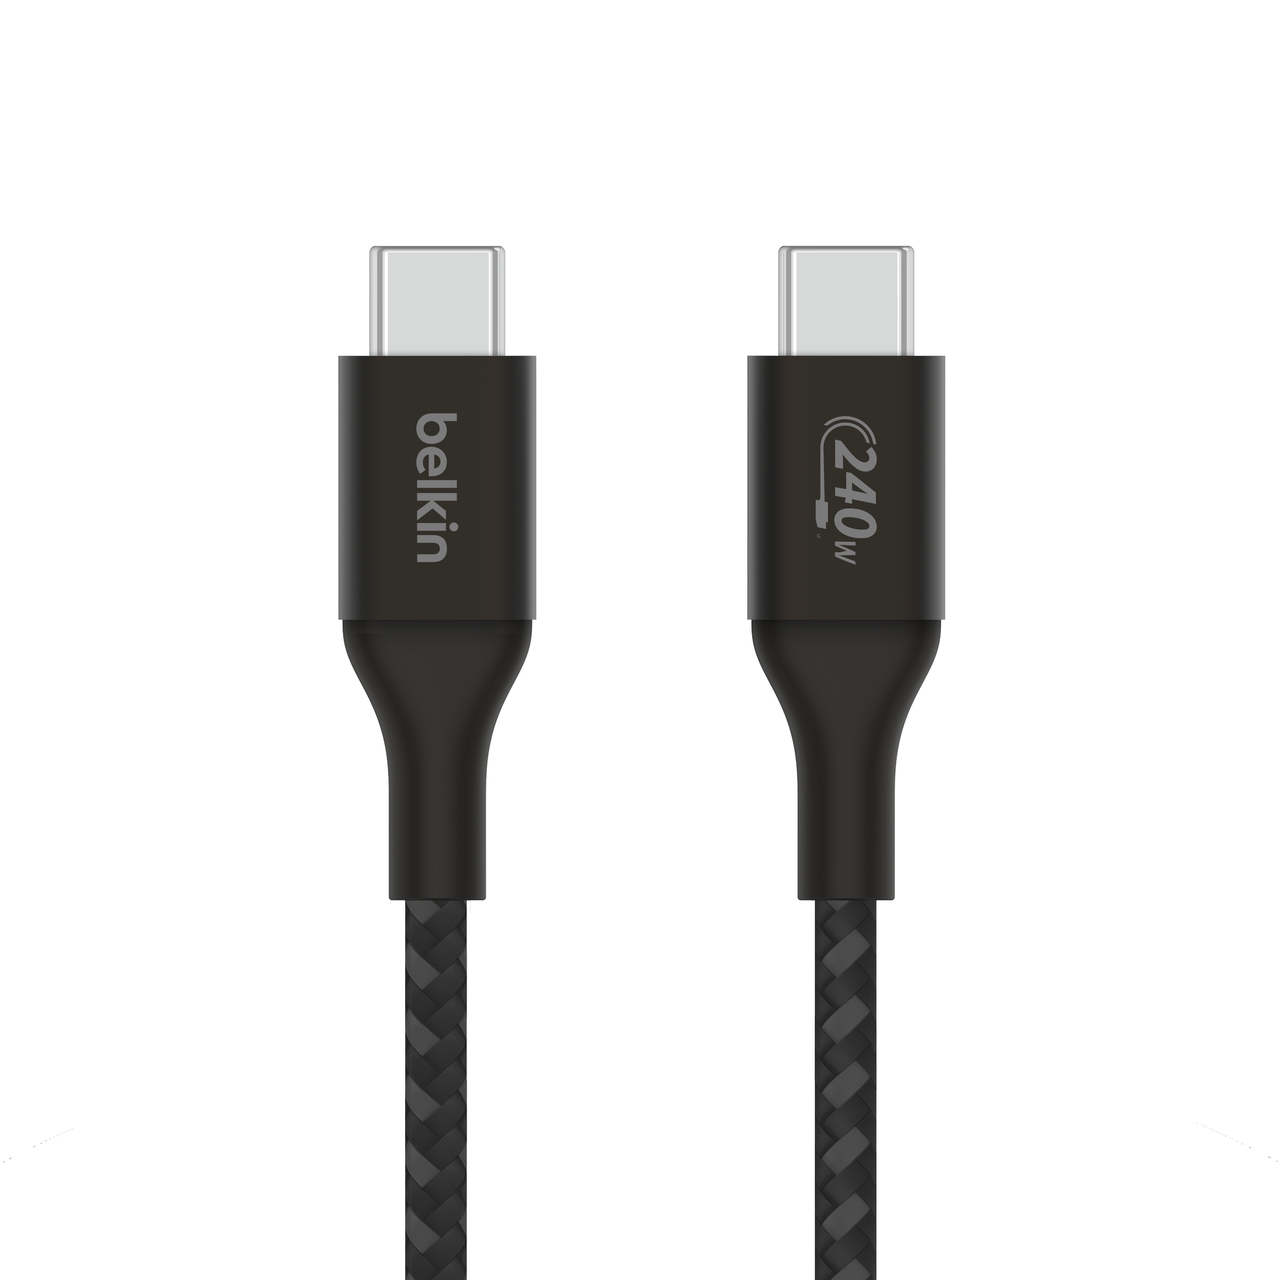 Photos - Cable (video, audio, USB) Belkin CAB015bt1MBK USB cable 1 m USB 2.0 USB C Black 